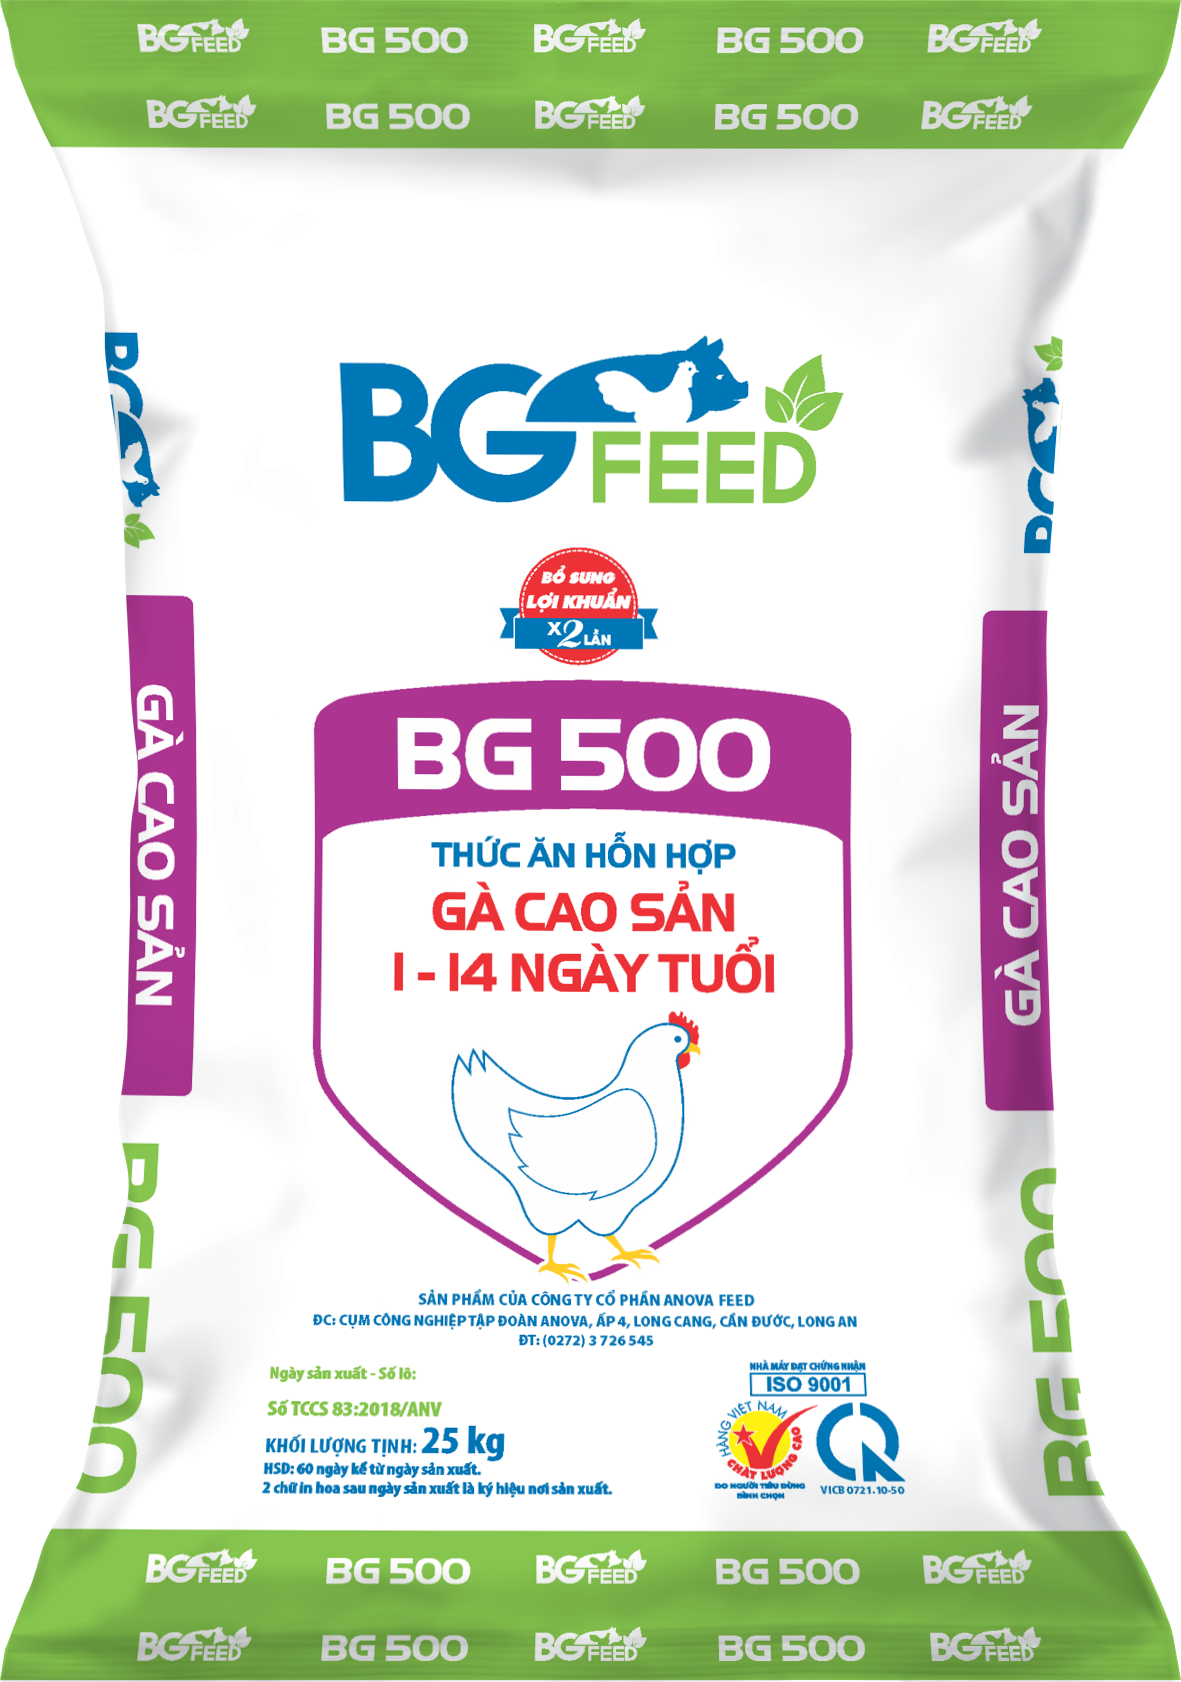 Thức ăn hỗn hợp dành cho gà cao sản từ 1 - 14 ngày tuổi BG500